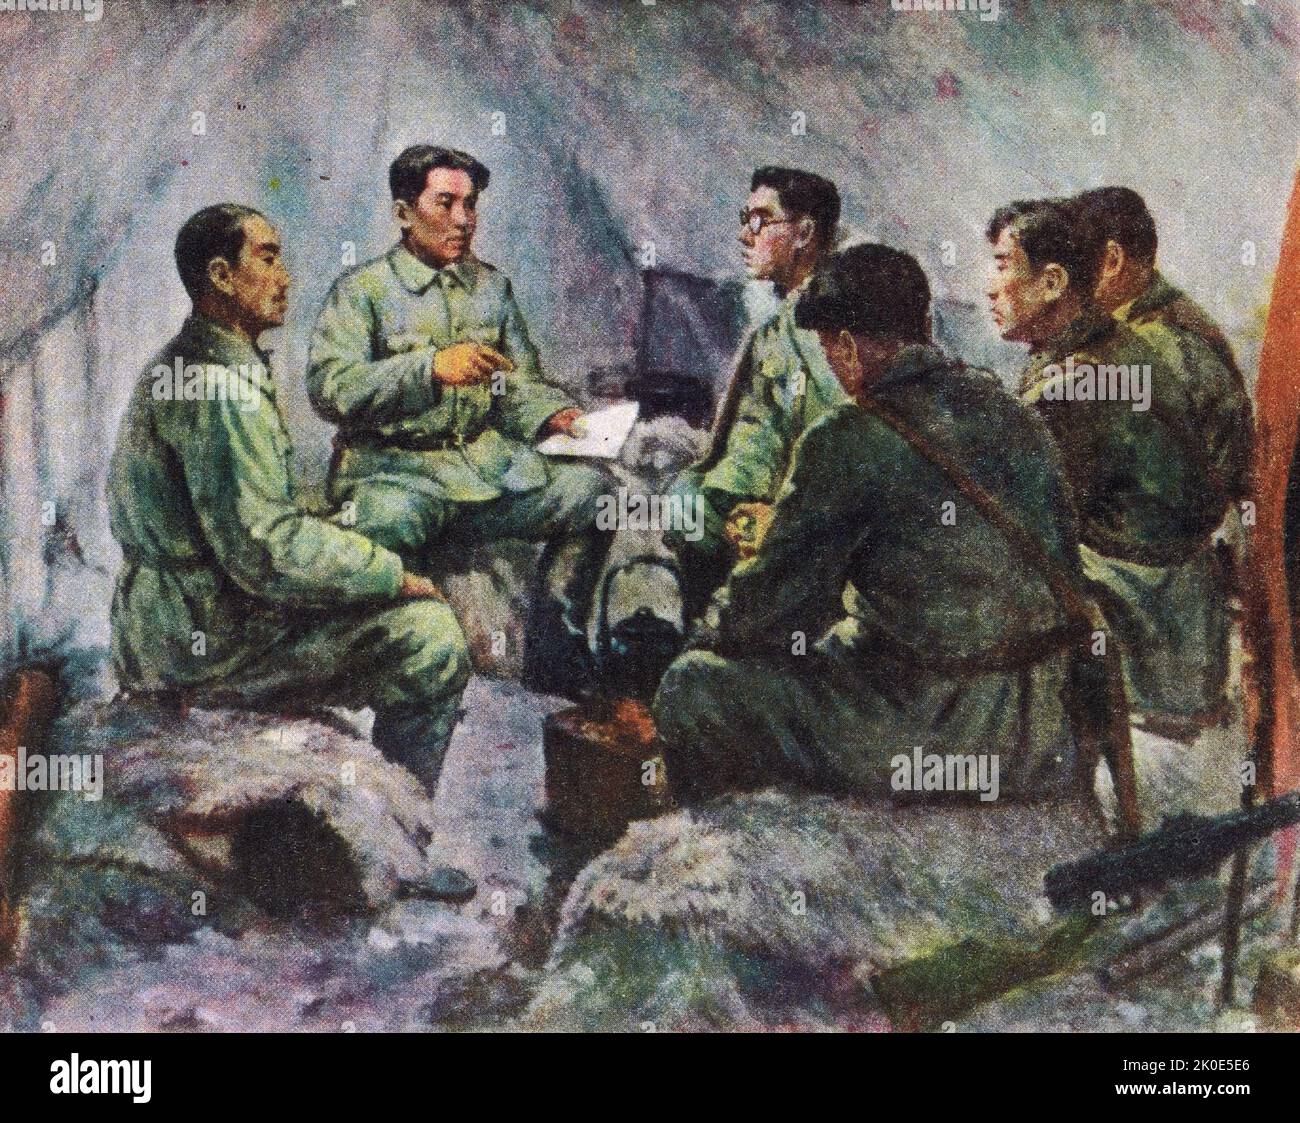 Nordkoreanisches Propagandaöl-Gemälde, das Widerstandskämpfer zeigt, die Angriffe gegen die Japaner planen. Treffen der Männer und Frauen in Langgang-hyeon, 1938. Stockfoto